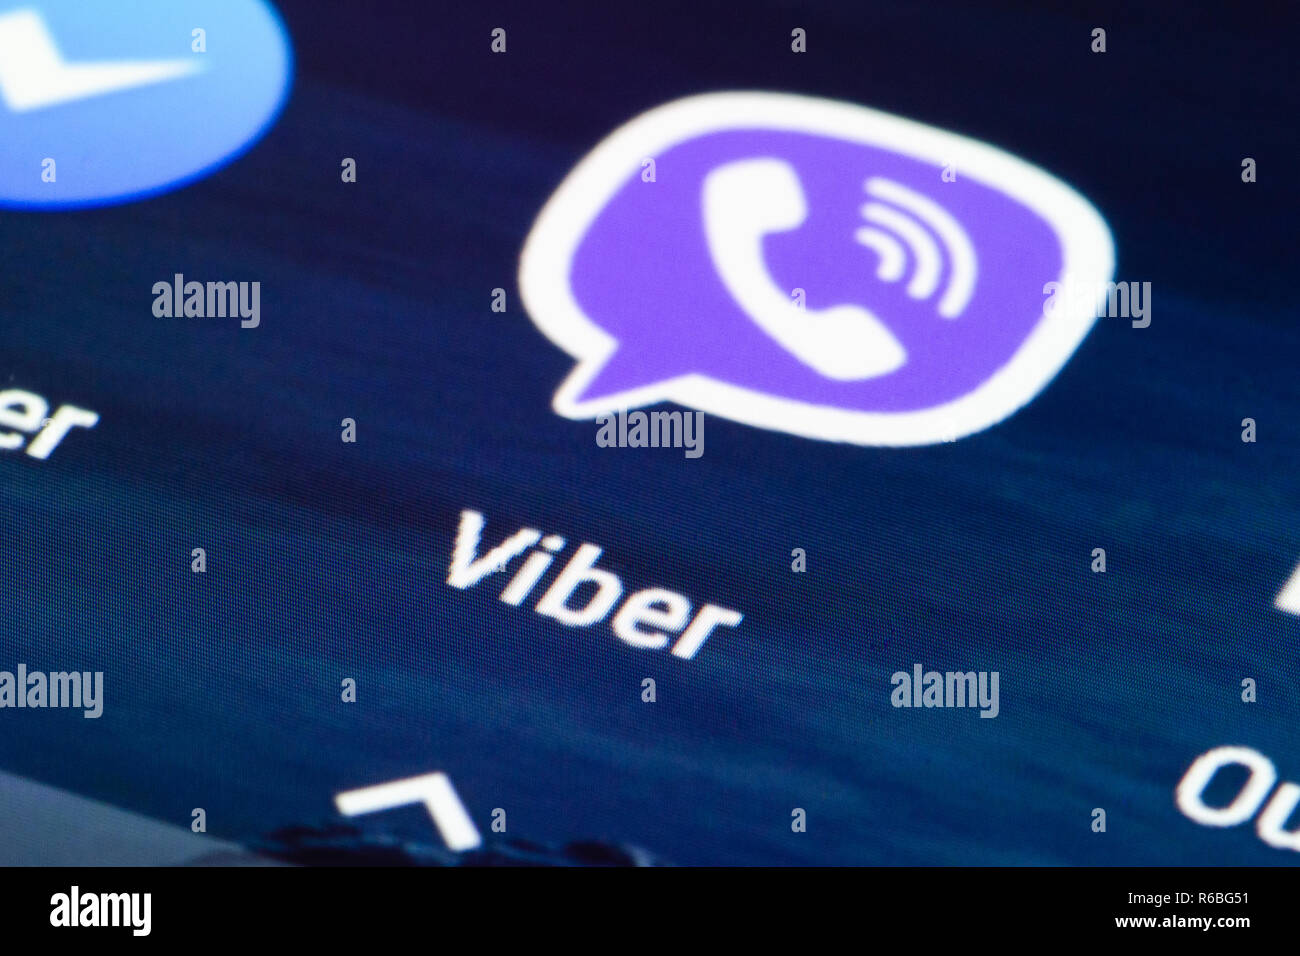 Icône Viber sur smartphone. L'app pour chat, appel et message, plate-forme de messagerie instantanée et la voix sur IP Banque D'Images